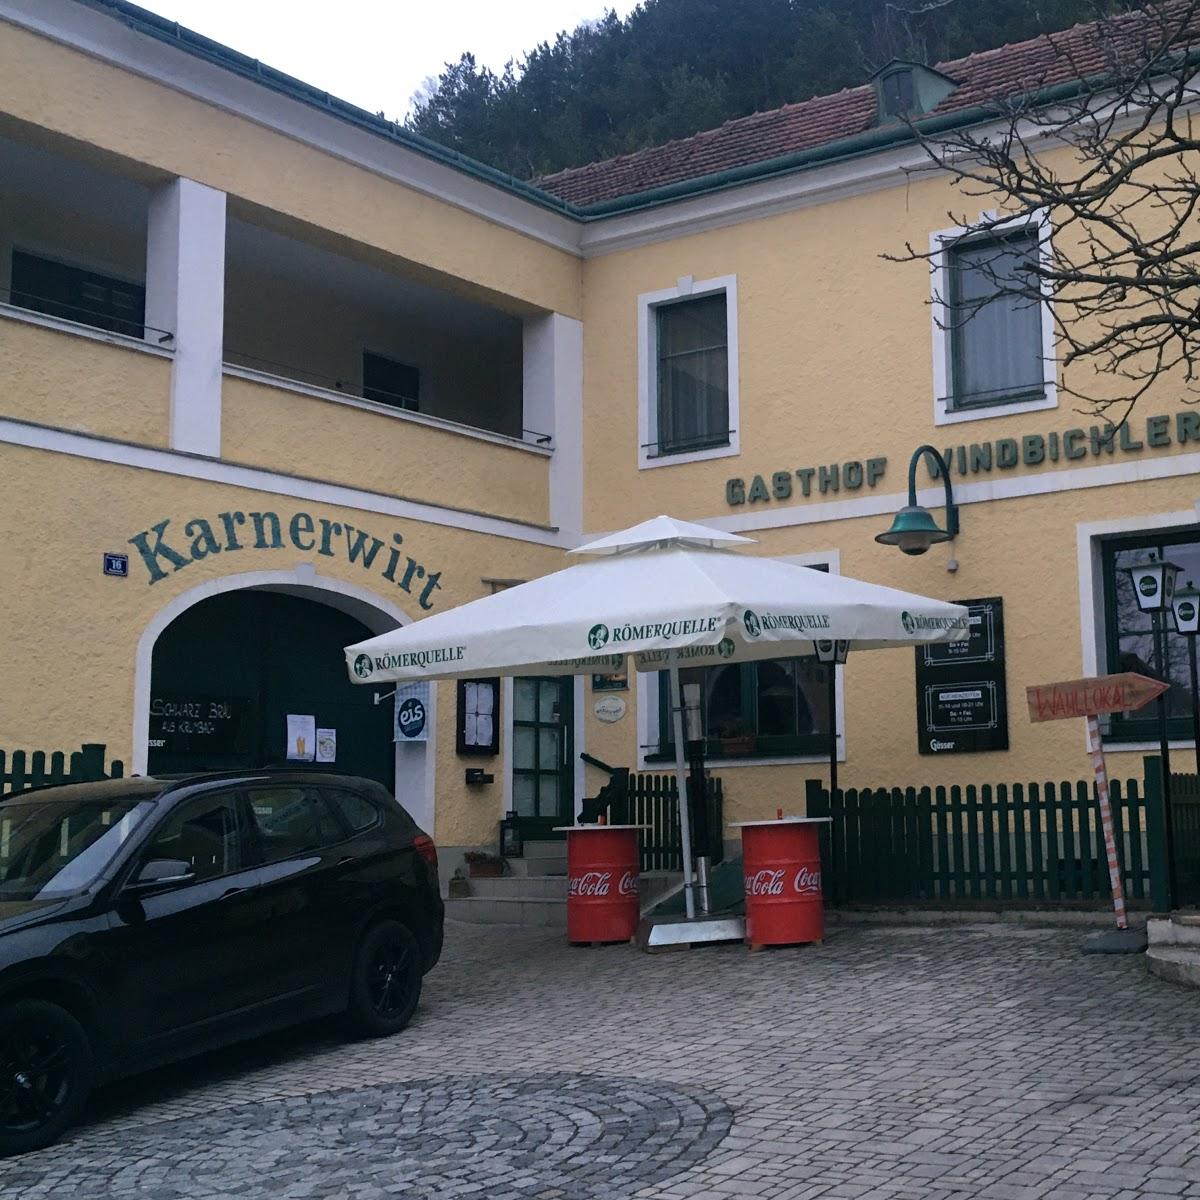 Restaurant "Gasthof Windbichler" in Bromberg